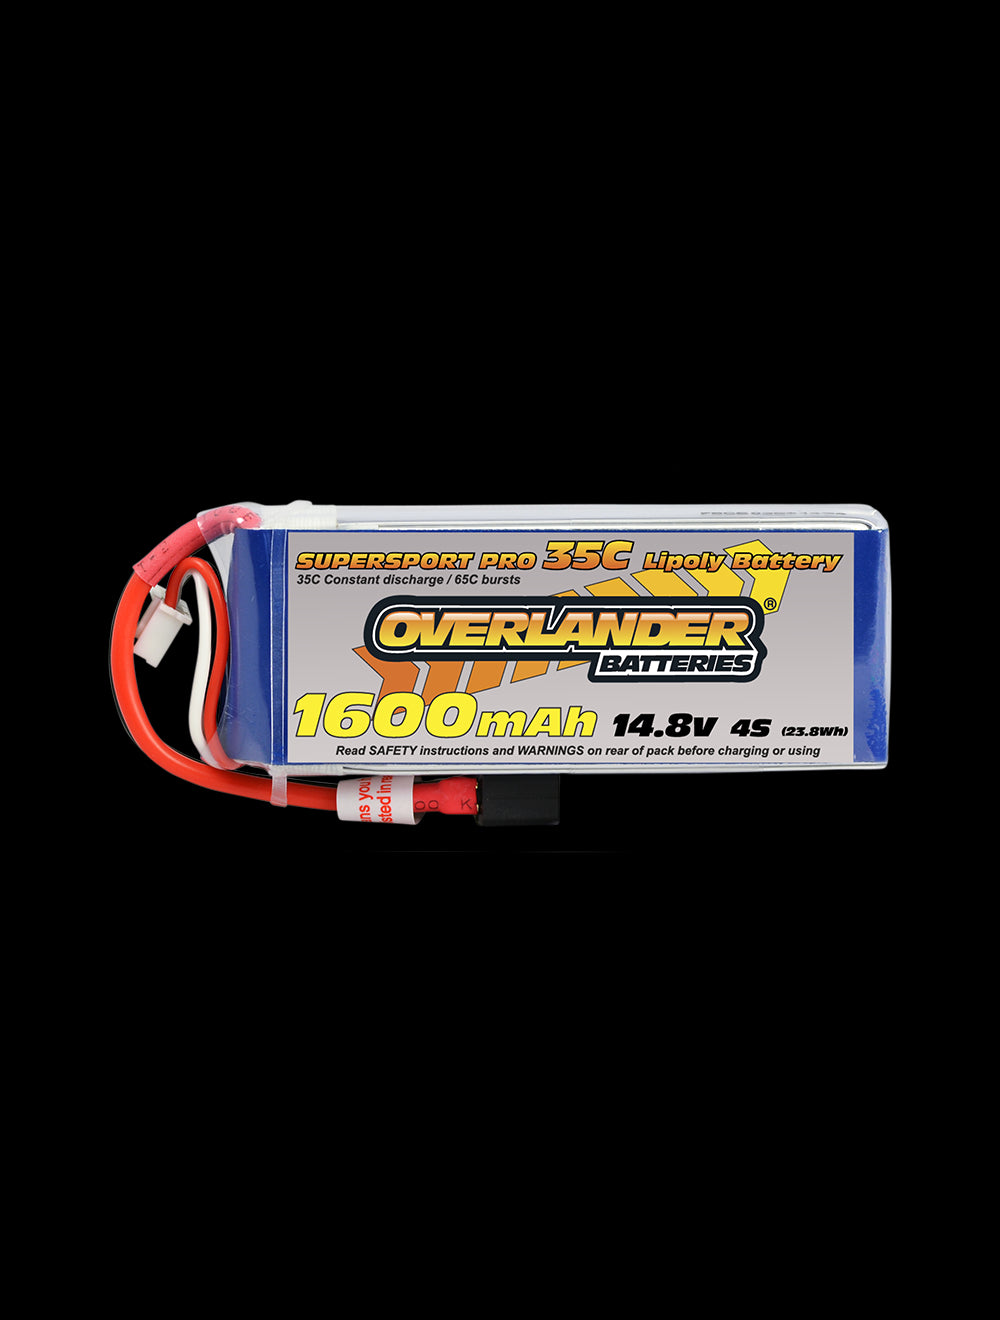 Overlander 1600mAh 14.8V 4S 35C Supersport Pro LiPo Battery - Deans Connector 2972